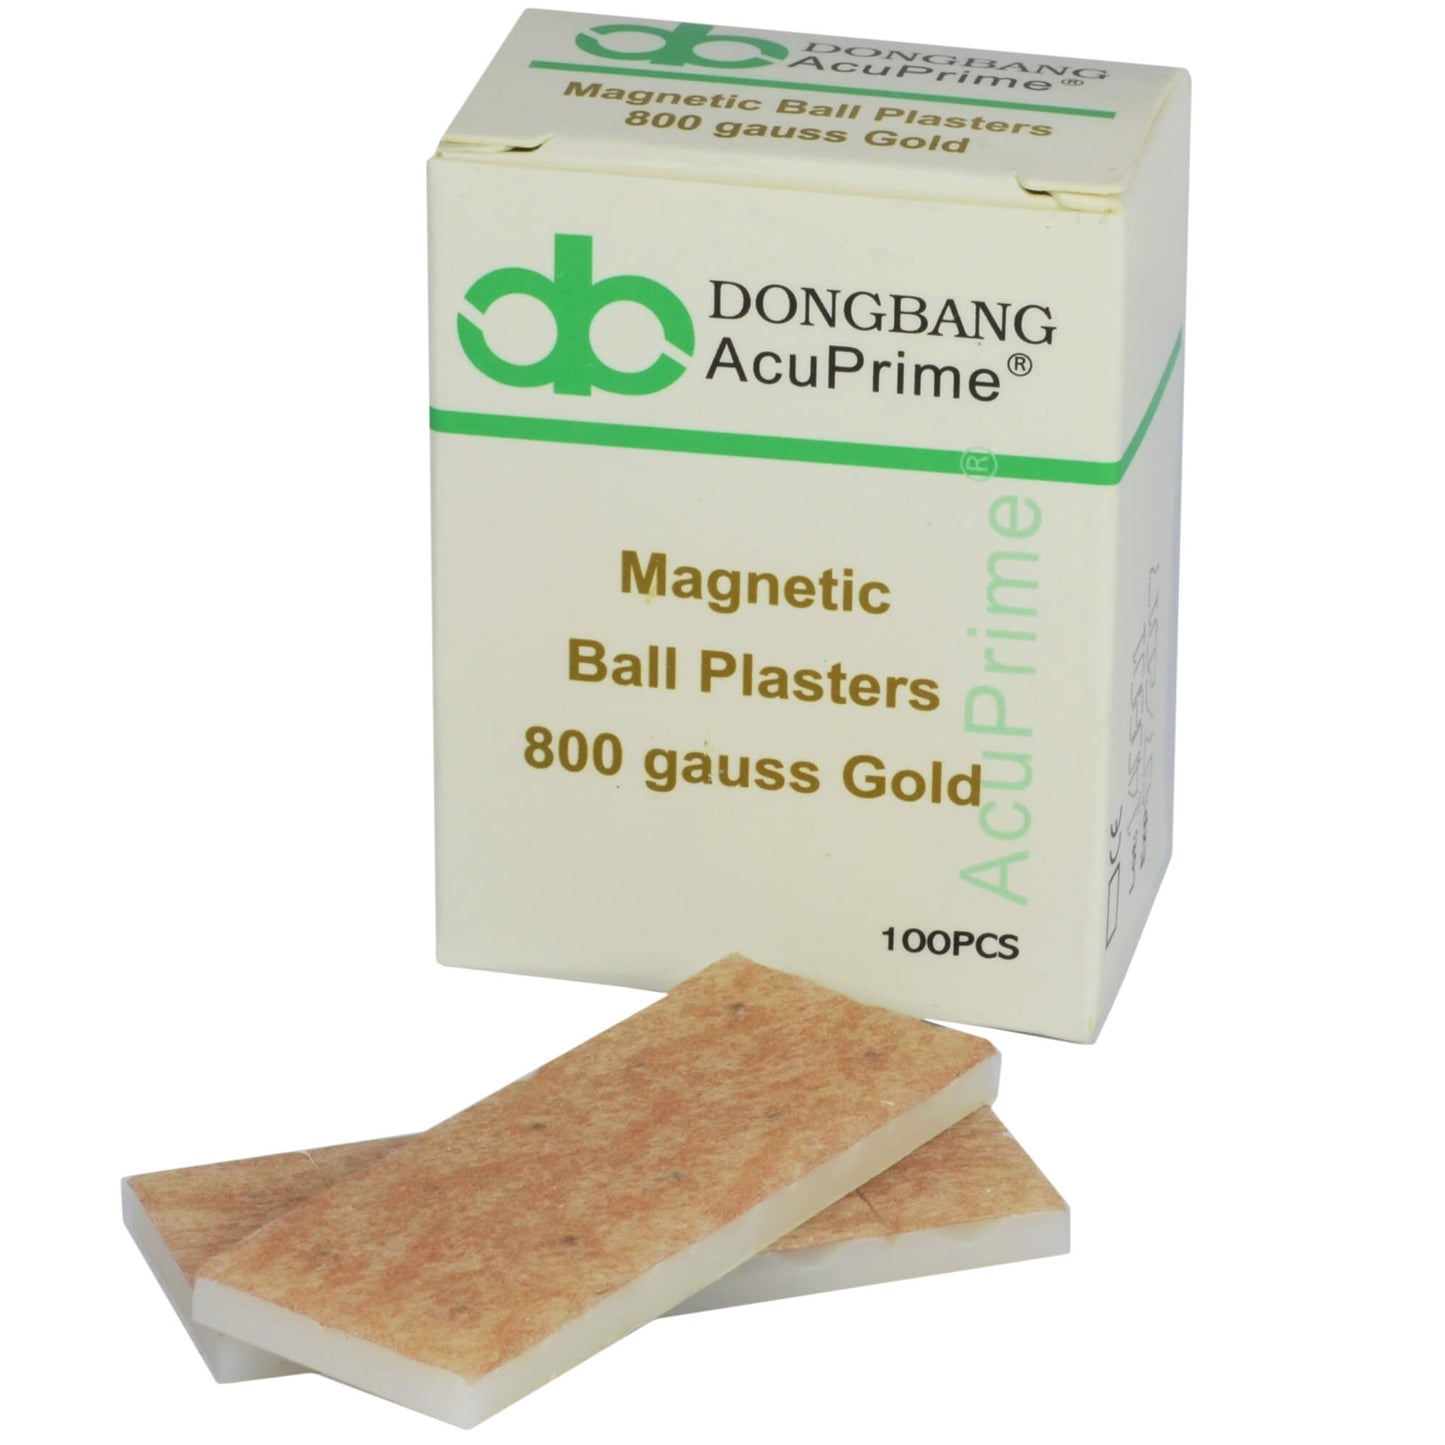 Magneetballetjes DongBang DBA425, gouden, 800 gauss